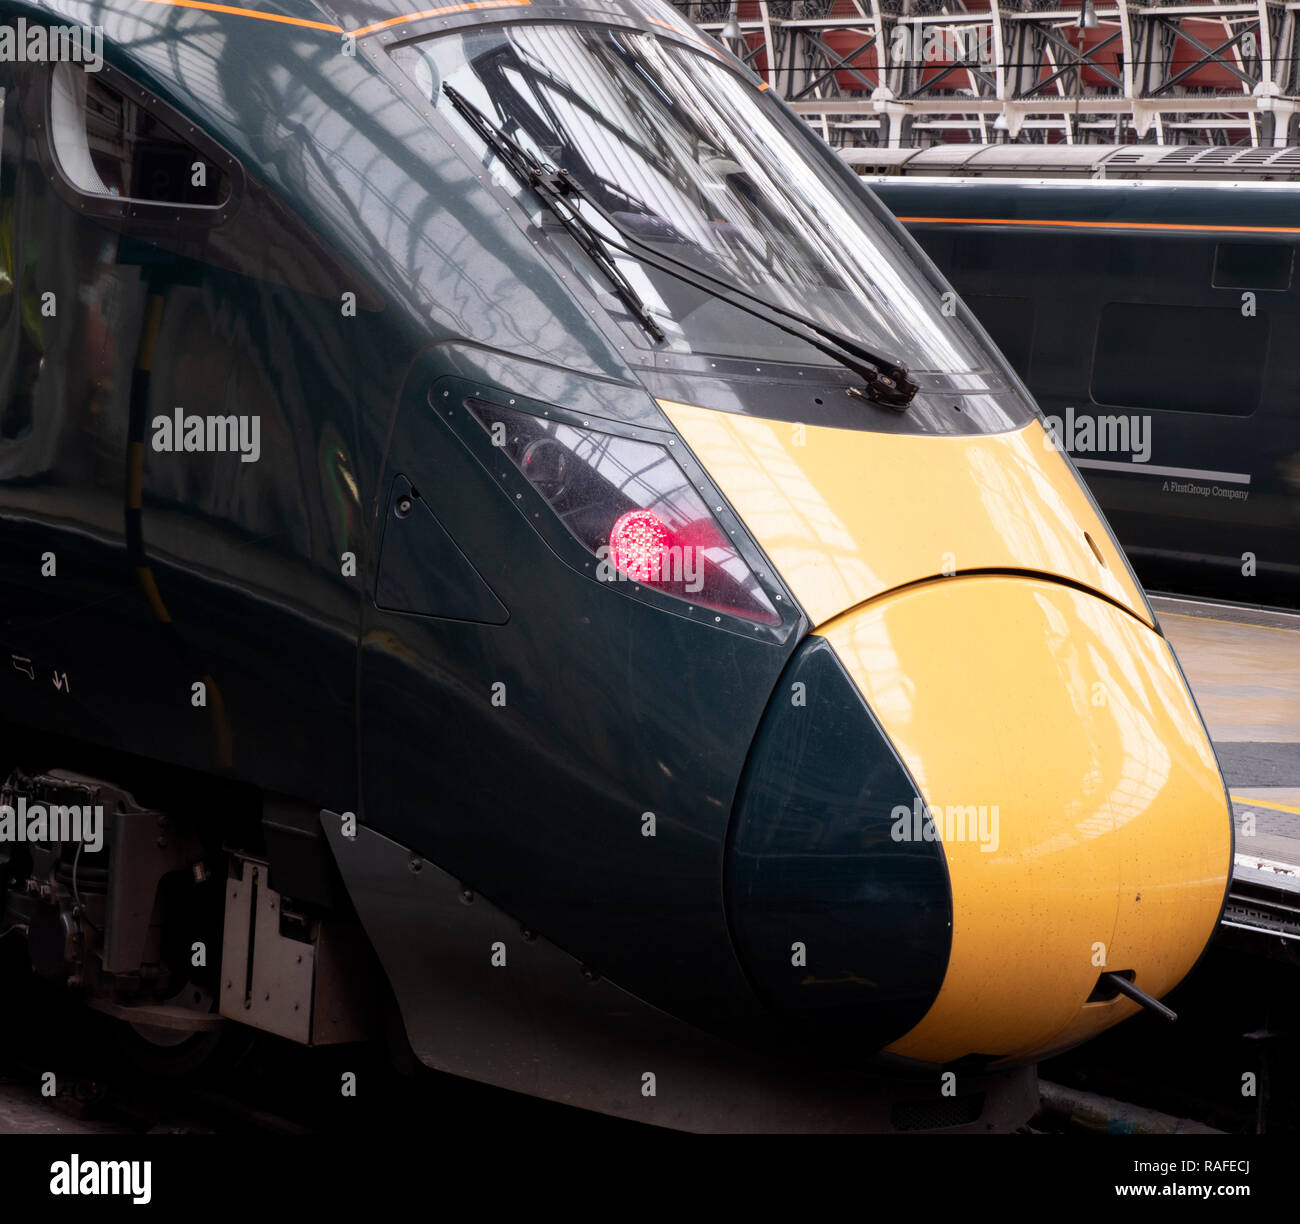 GWR (British Rail classe 800) Intercity Express - treno - IET presso la stazione ferroviaria di Paddington, Paddington, London, England, Regno Unito Foto Stock